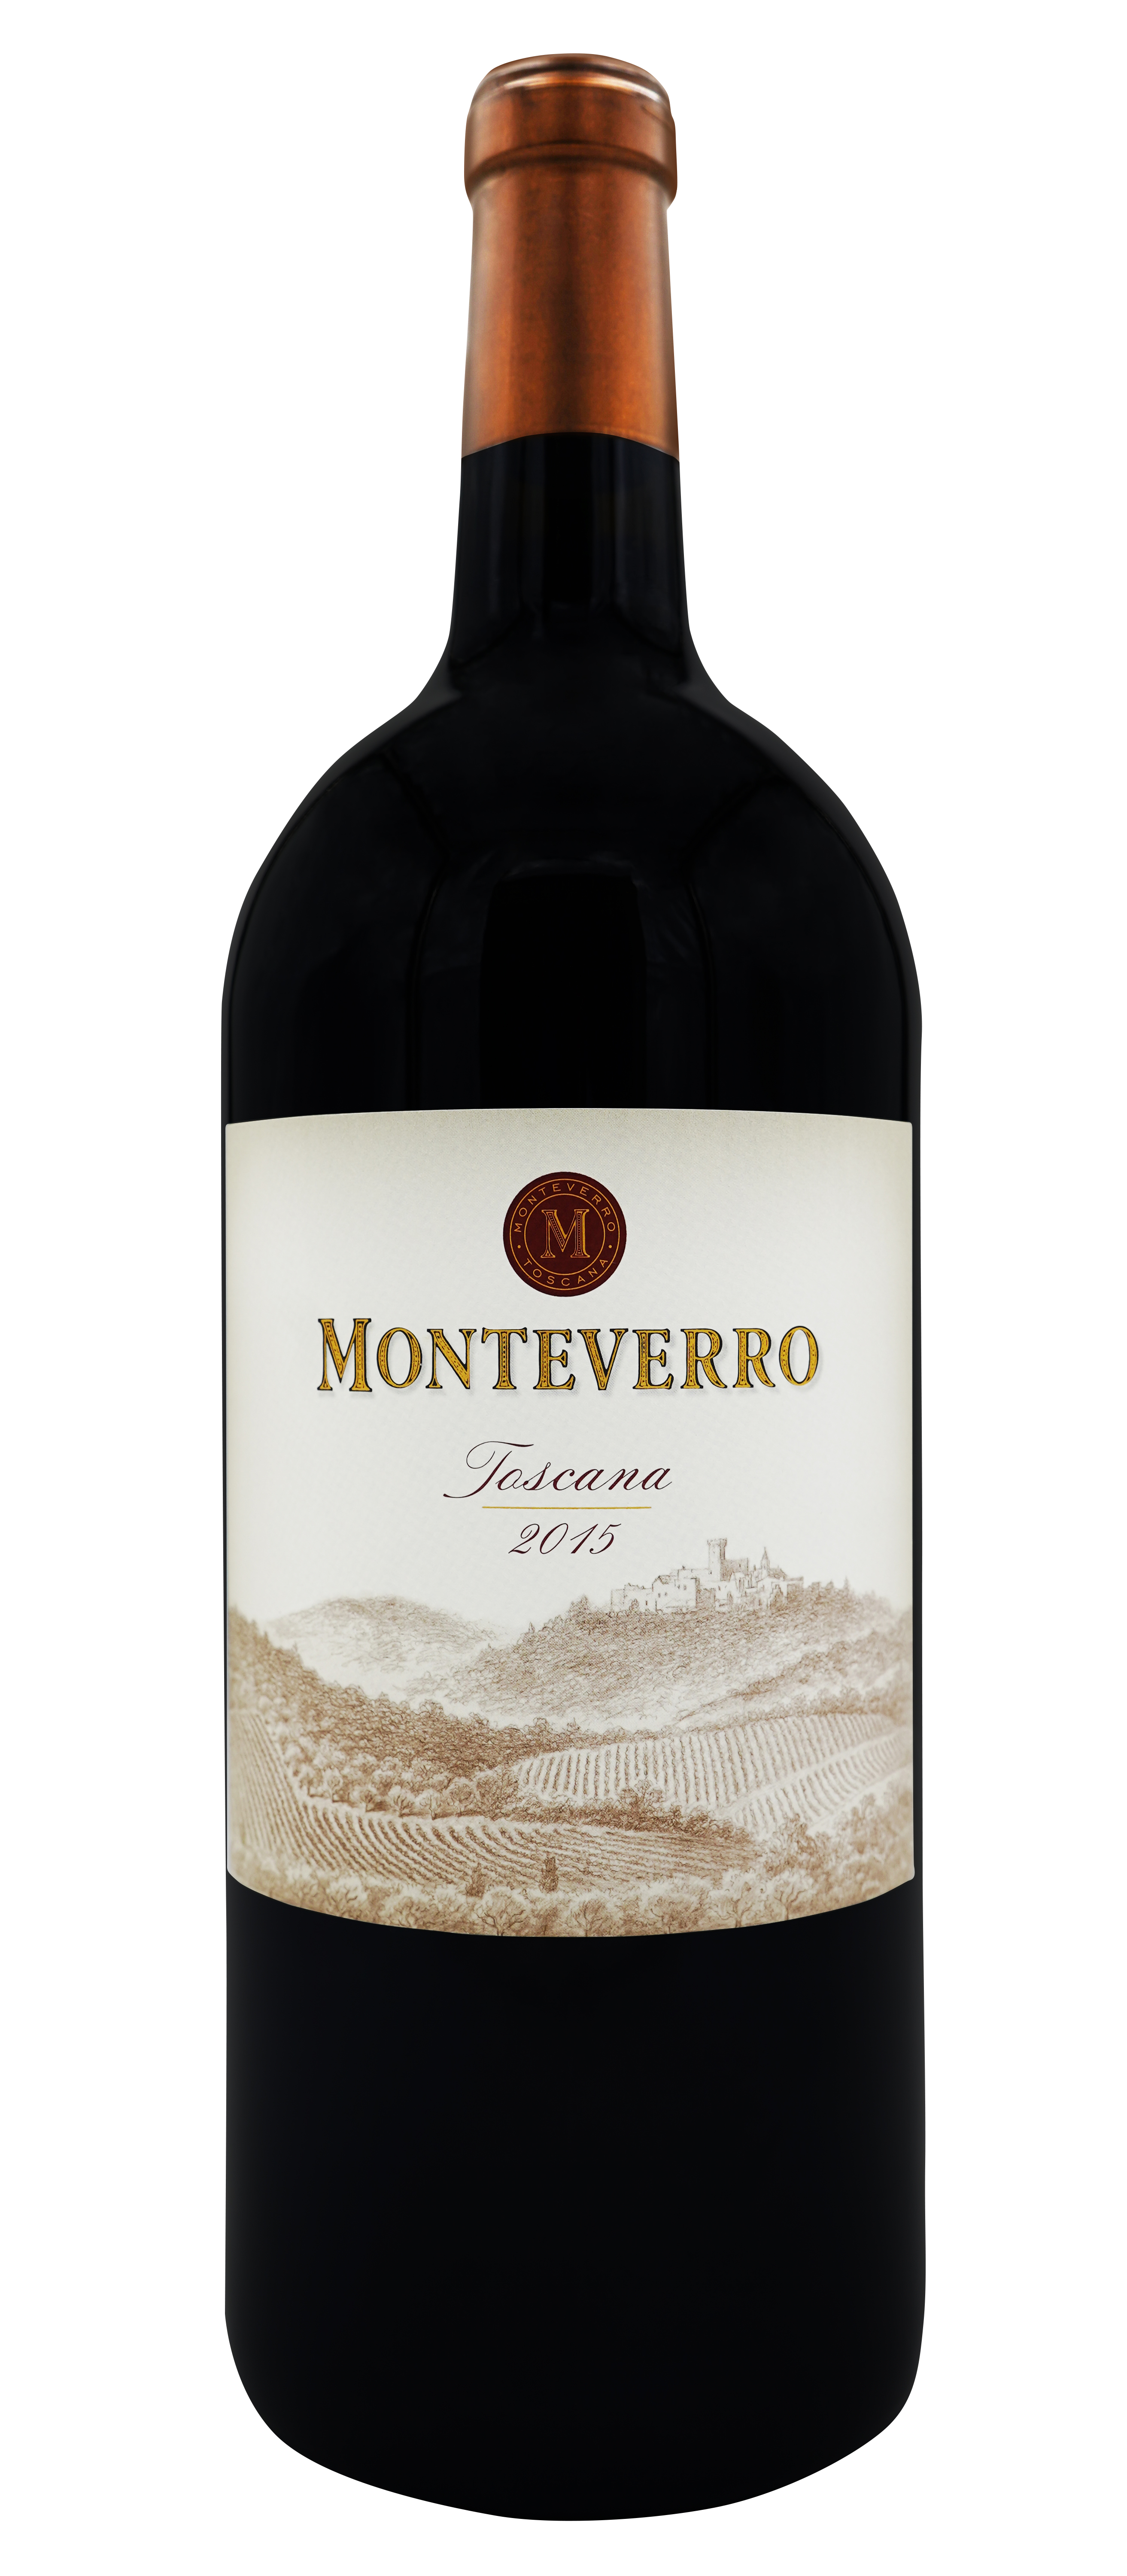 Monteverro 2015 3liter